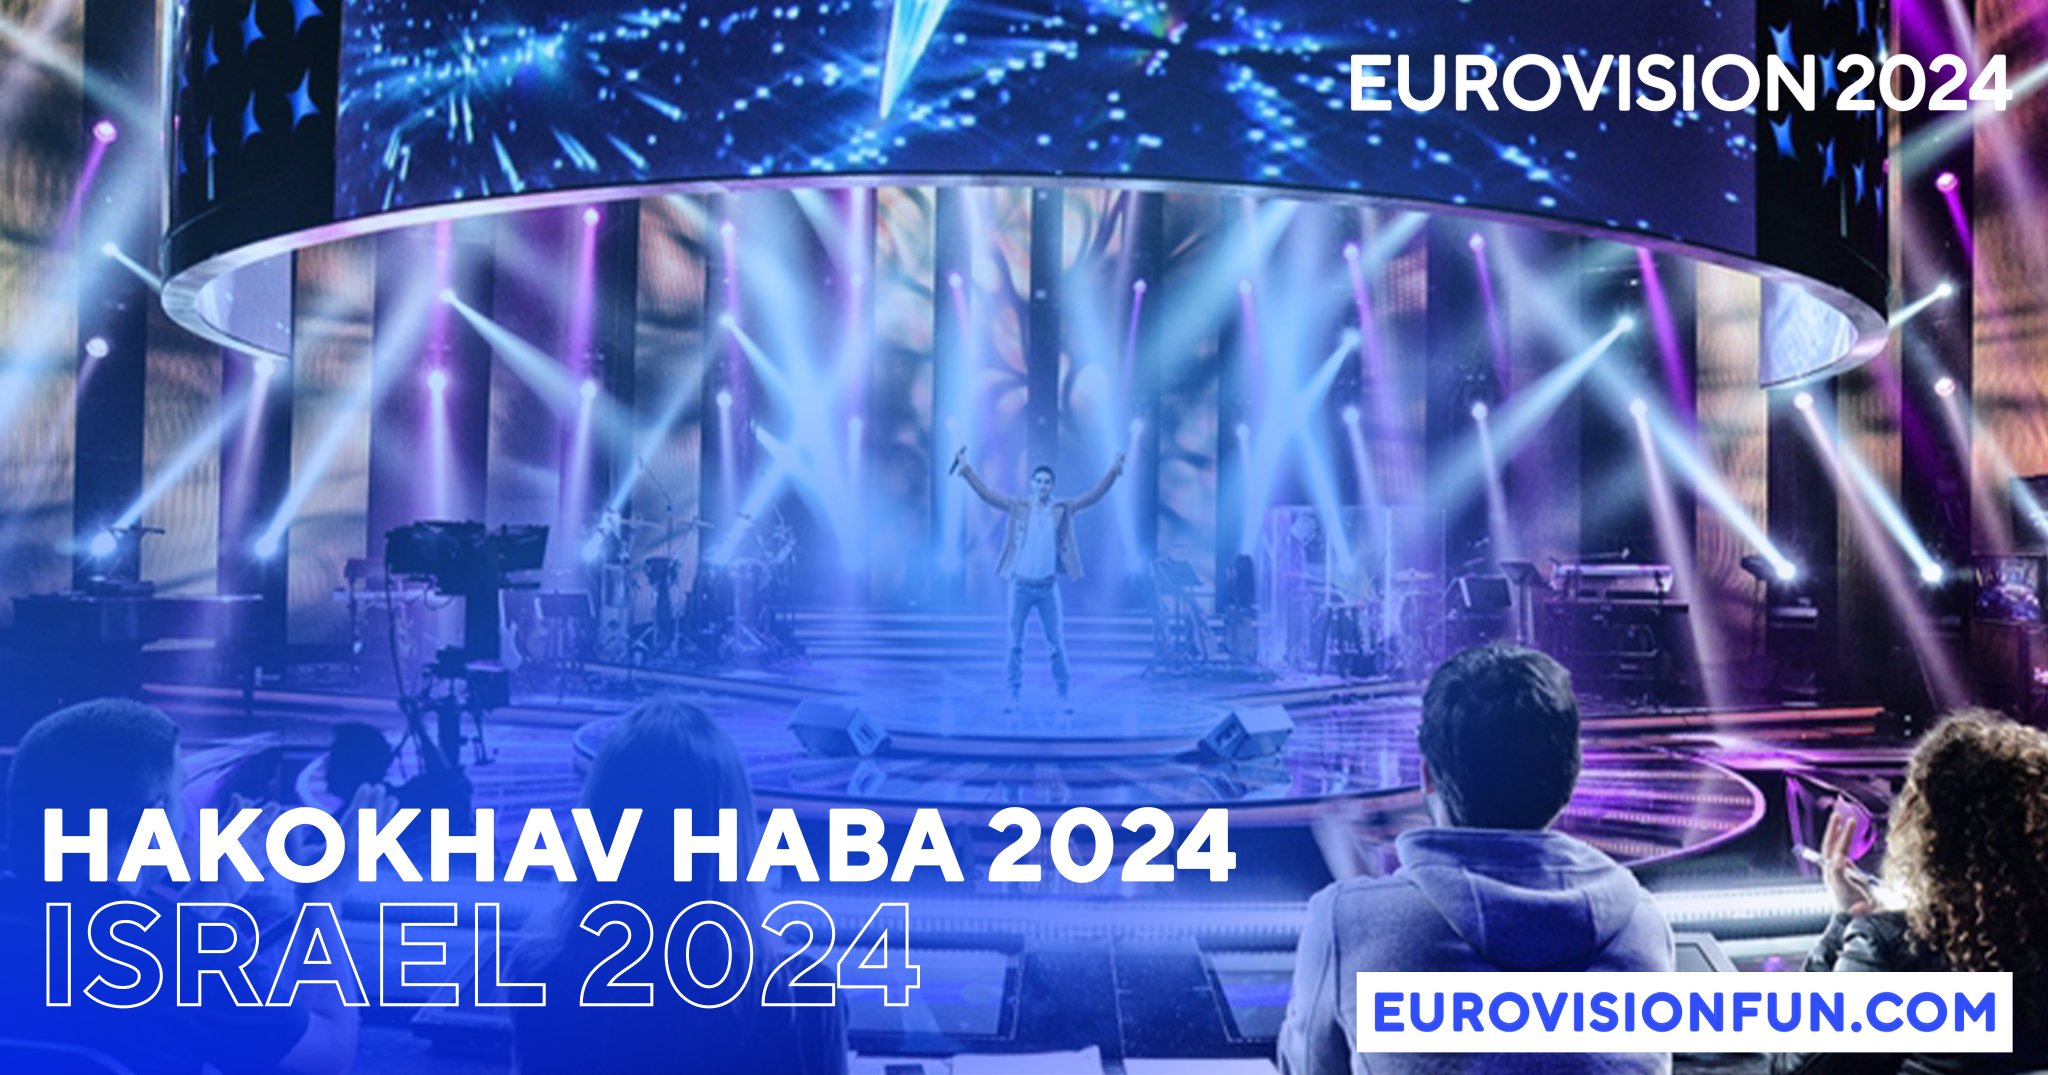 Israel Eurovision 2024 Trailer! (Video) Eurovision News Music Fun